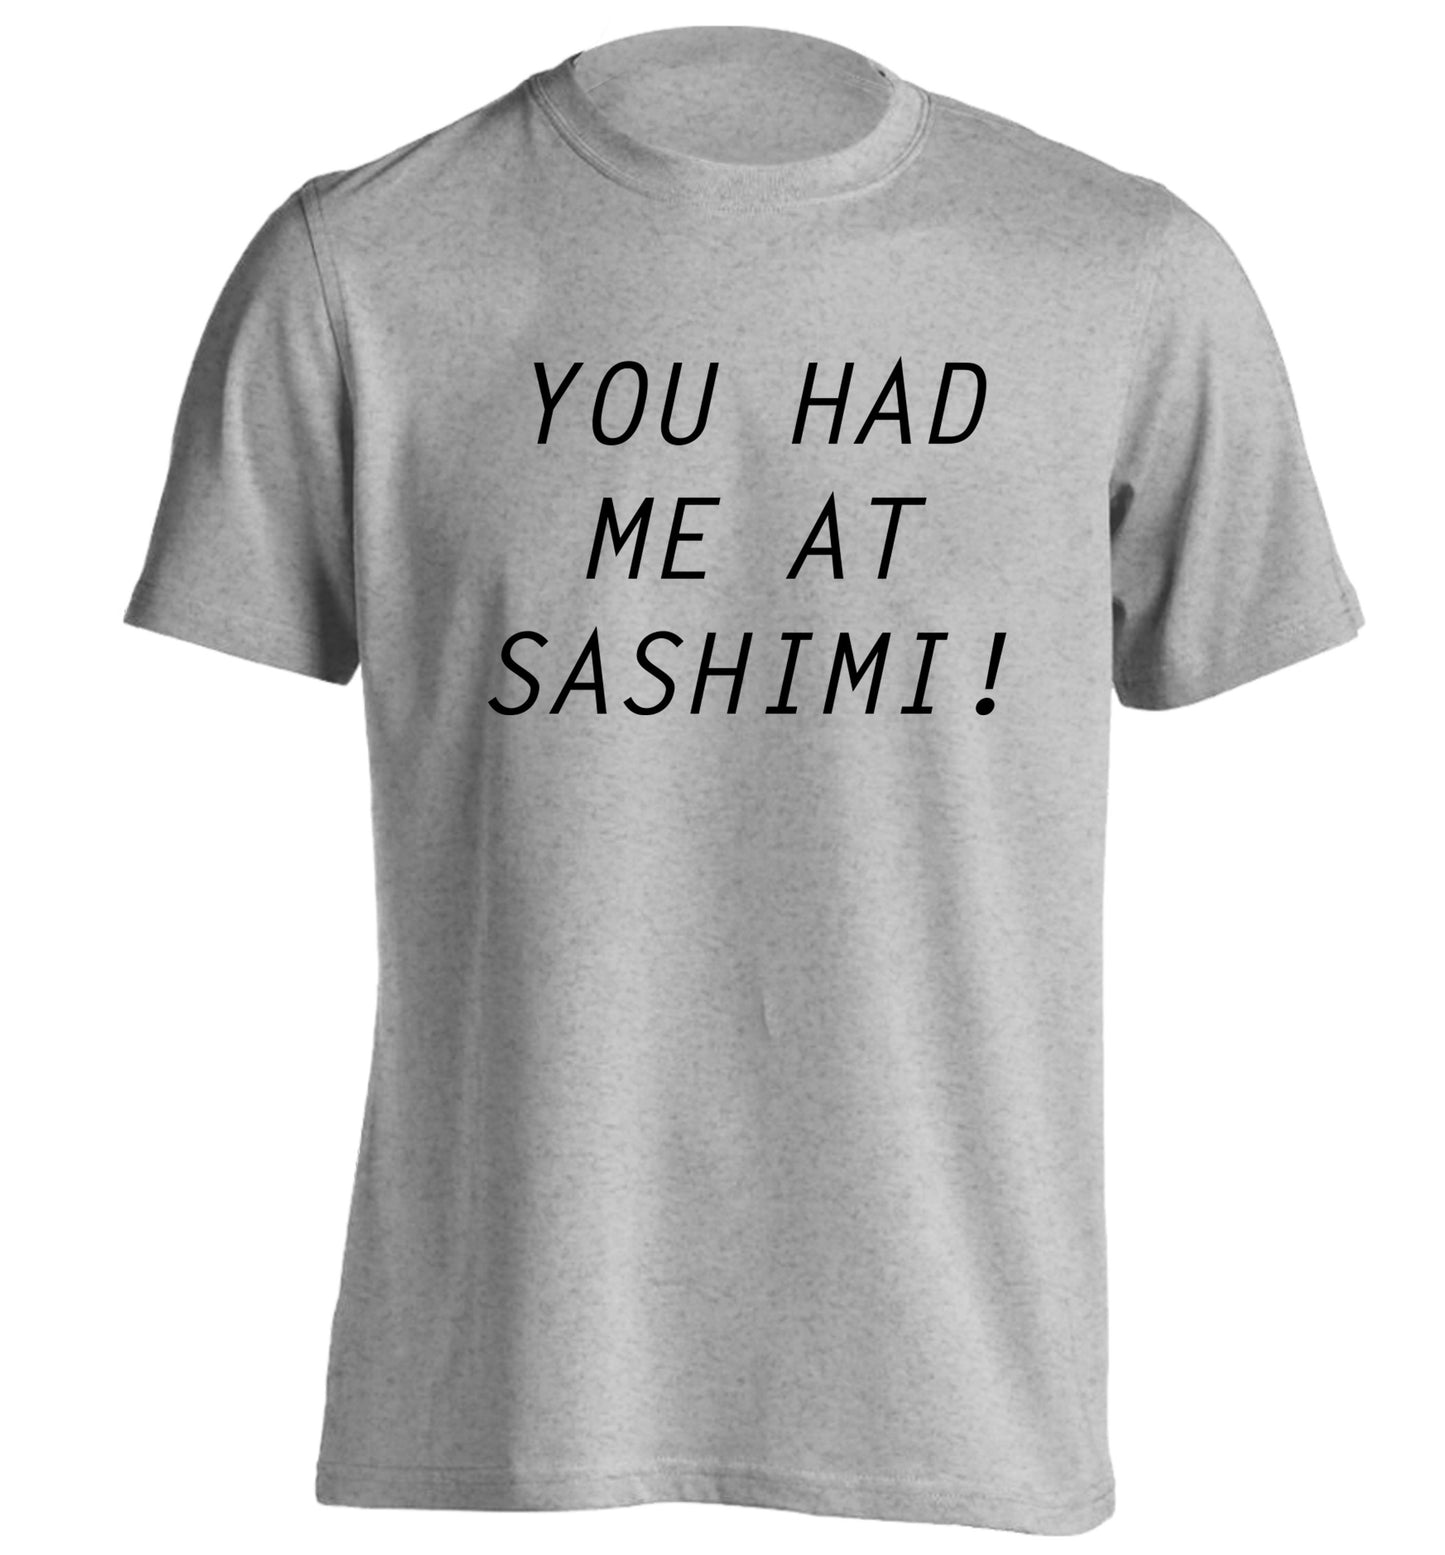 You had me at sashimi adults unisex grey Tshirt 2XL